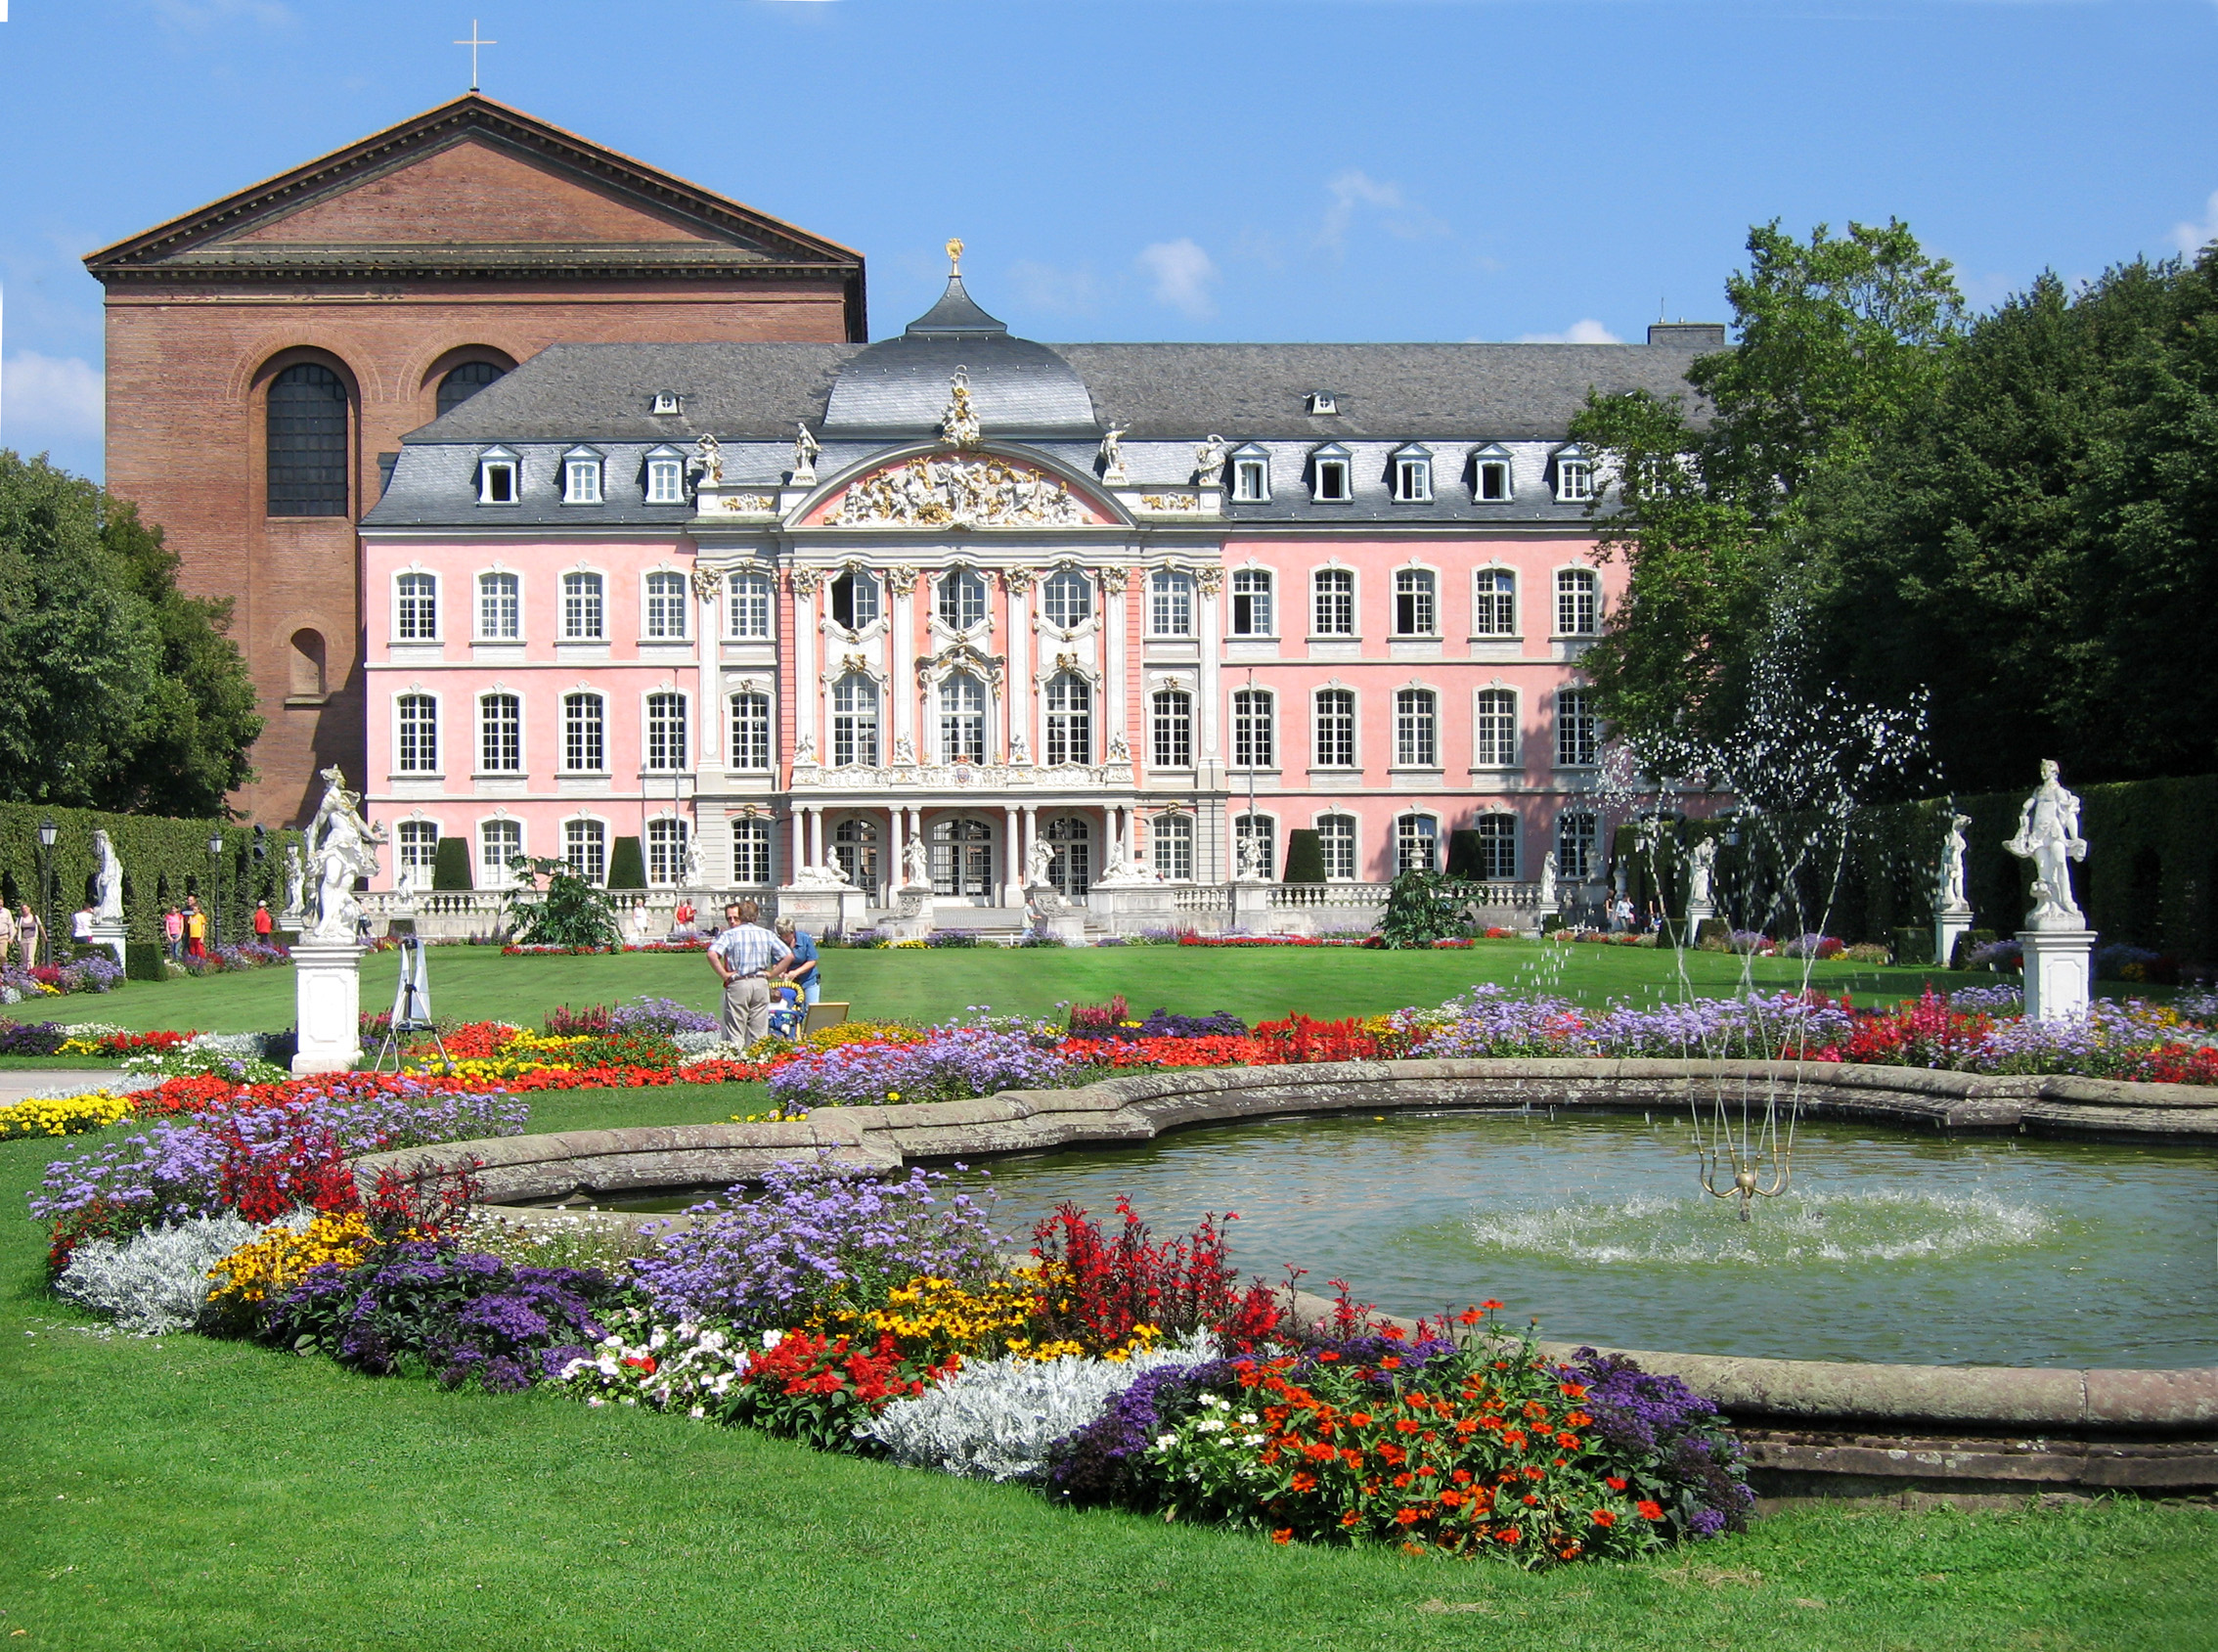 Kurfürstliches Palais.
